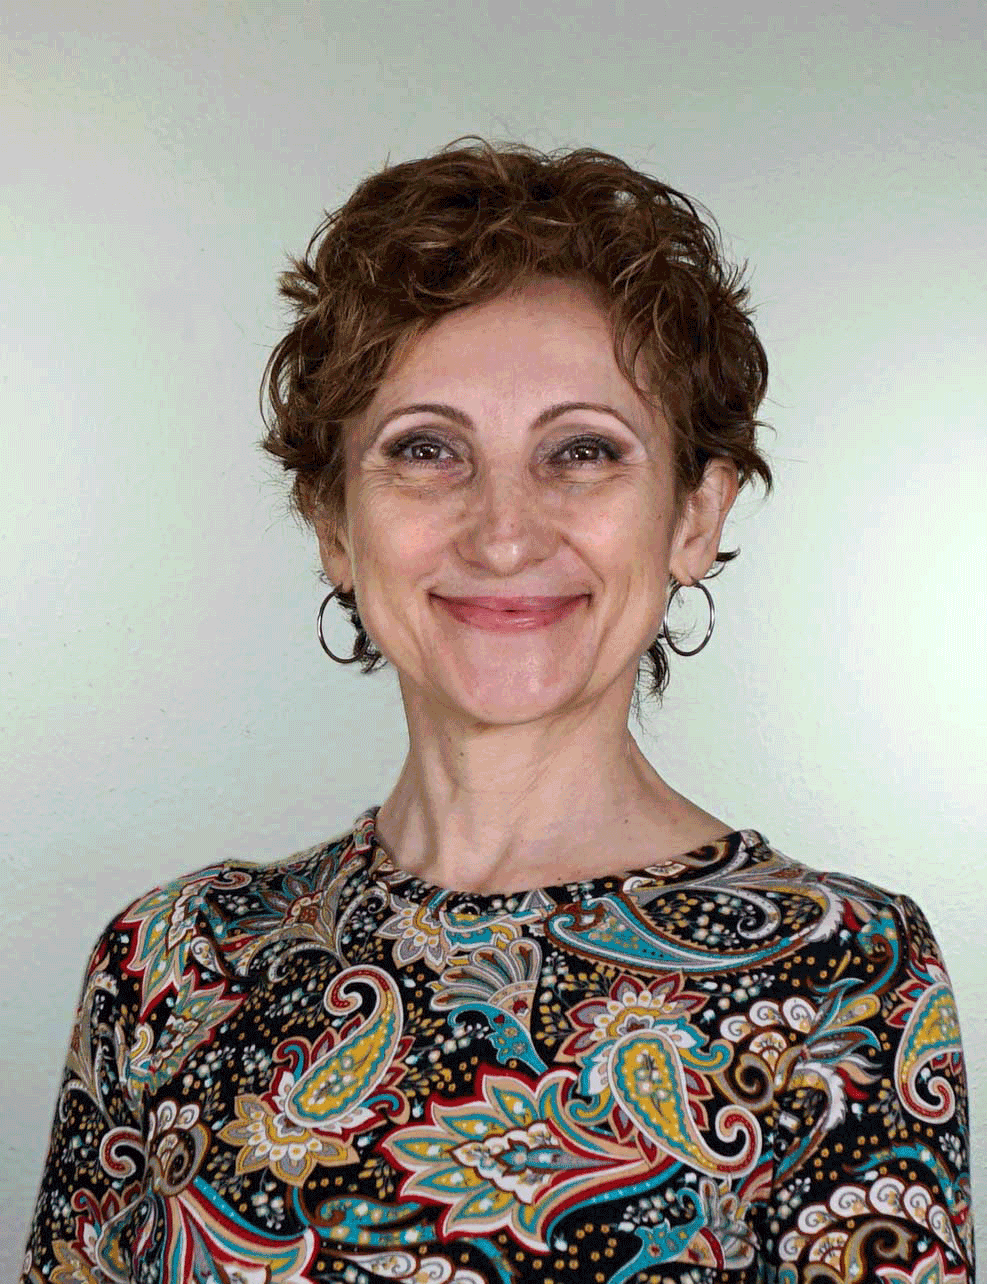 Portrait von Tanzlehrerin Lena Wiezorrek, freundliche Expertin für Tanzen und Körperhaltung.